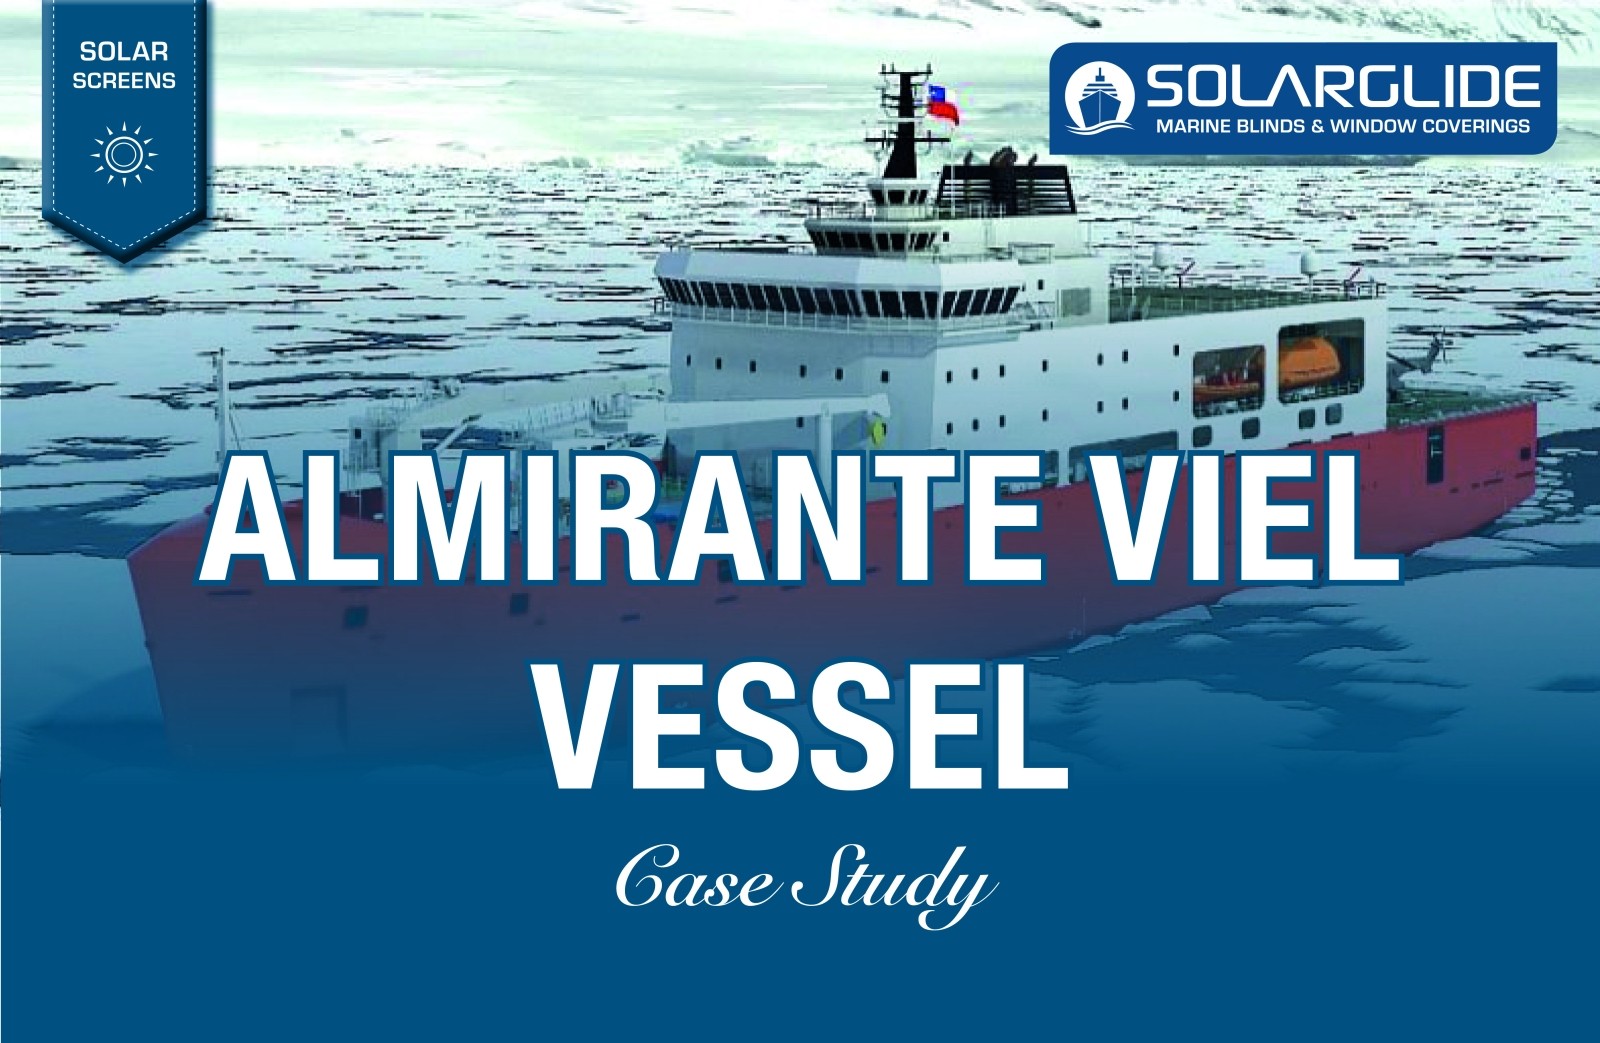 Almirante Viel Vessel commission Solarglide